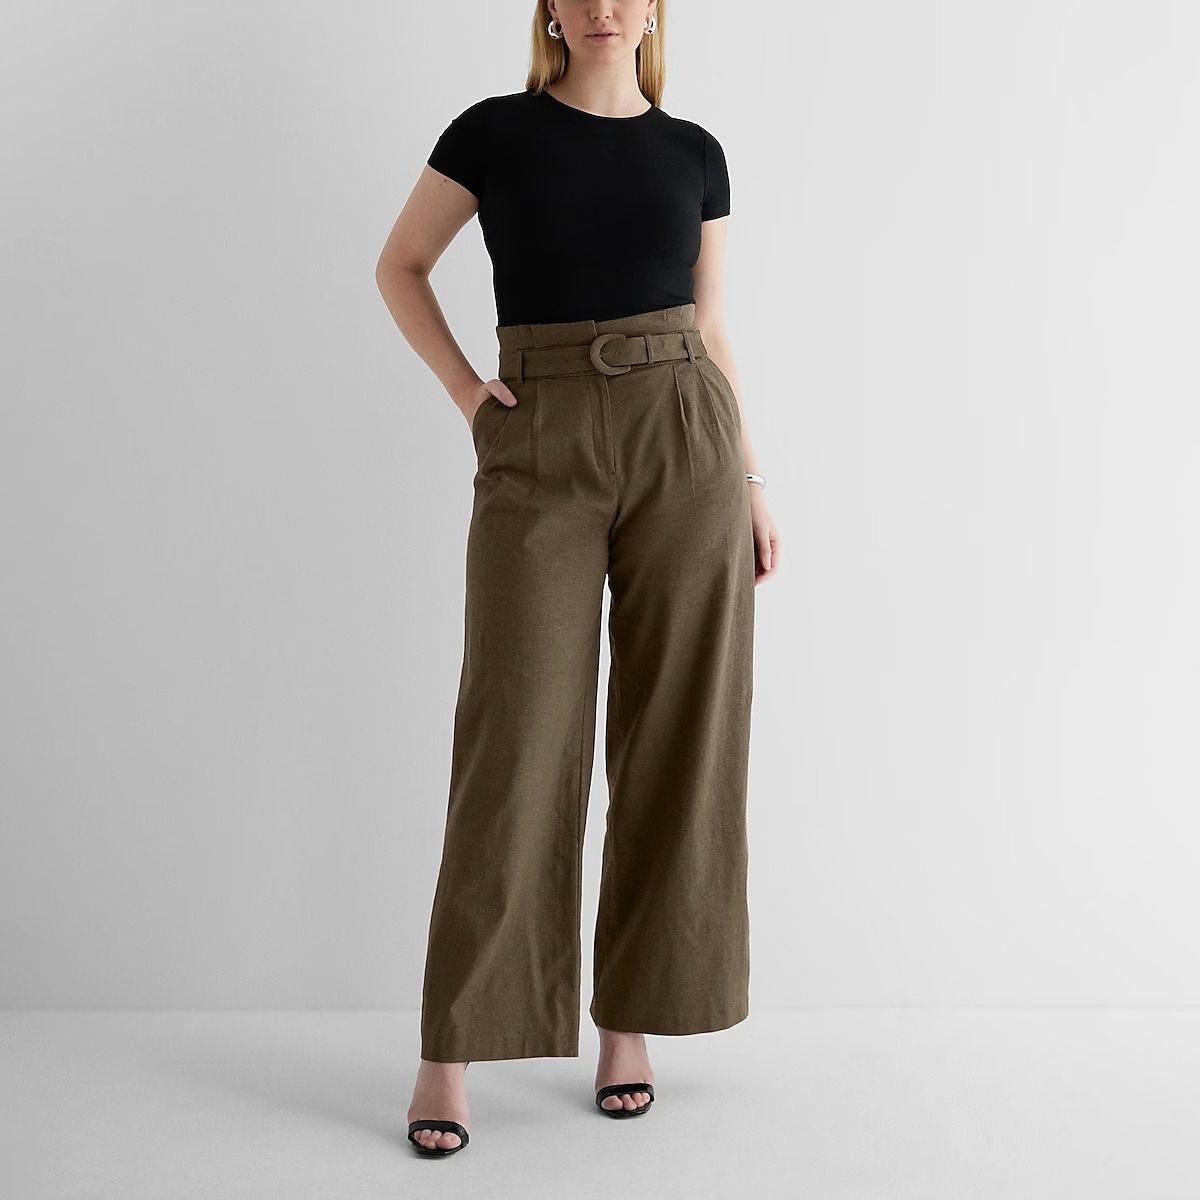 100% Linen Top Trousers set | Linen top women, Linen top, Linen women